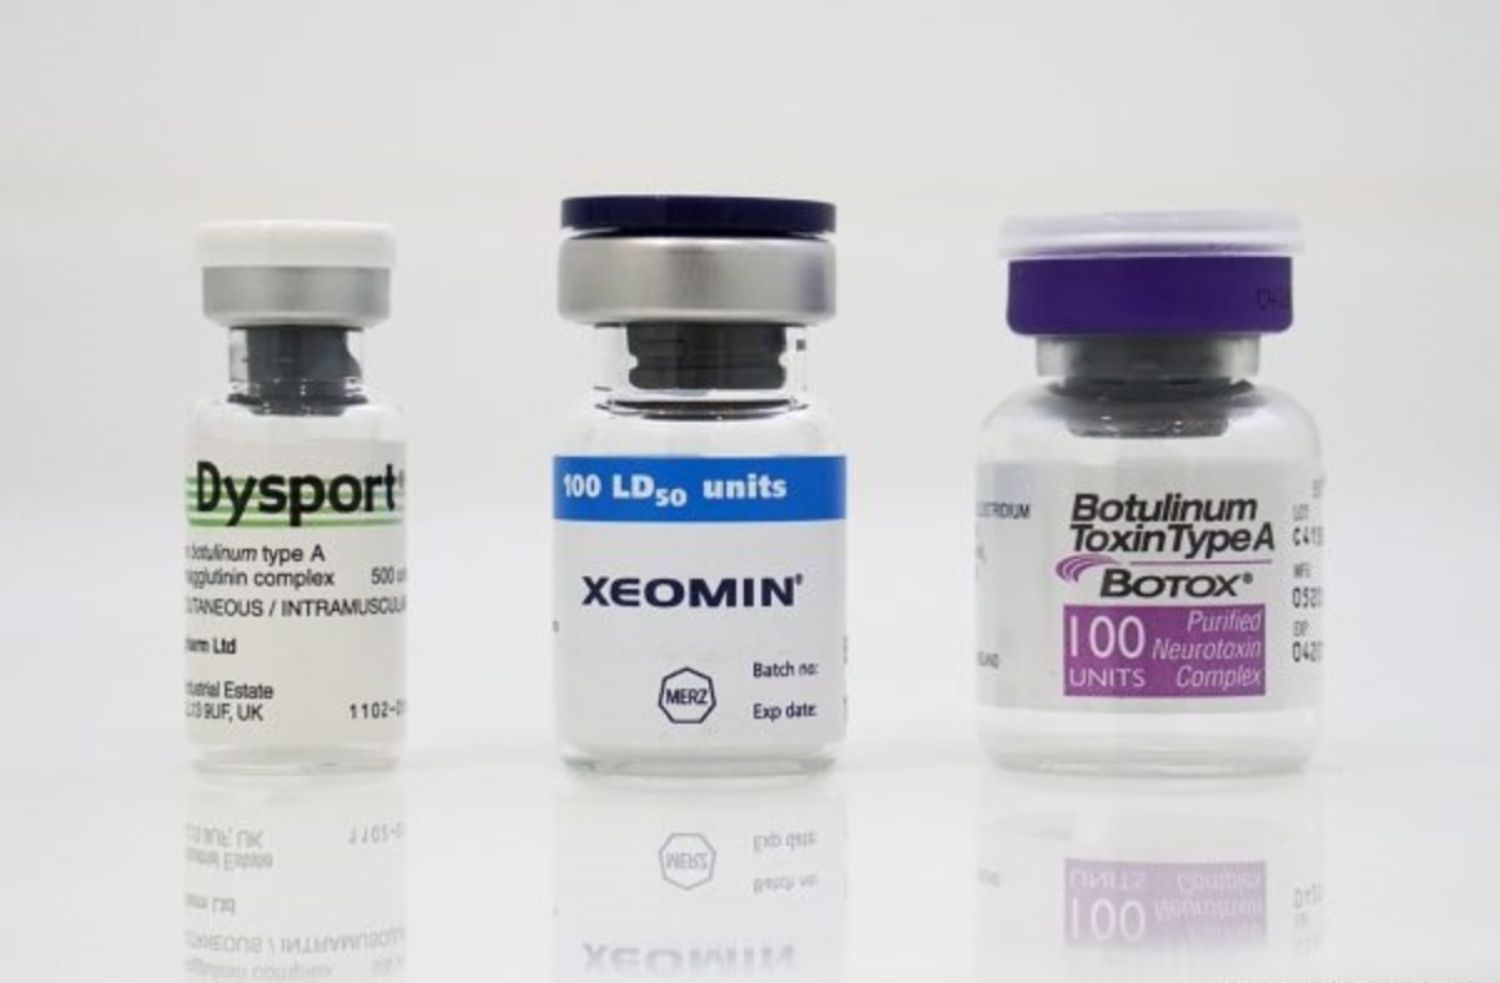 Ngoài botox bệnh nhân có thể sử dụng các loại Botulinum Toxin Type A khác như Dysport và Xeomin để tiêm thon gọn hàm